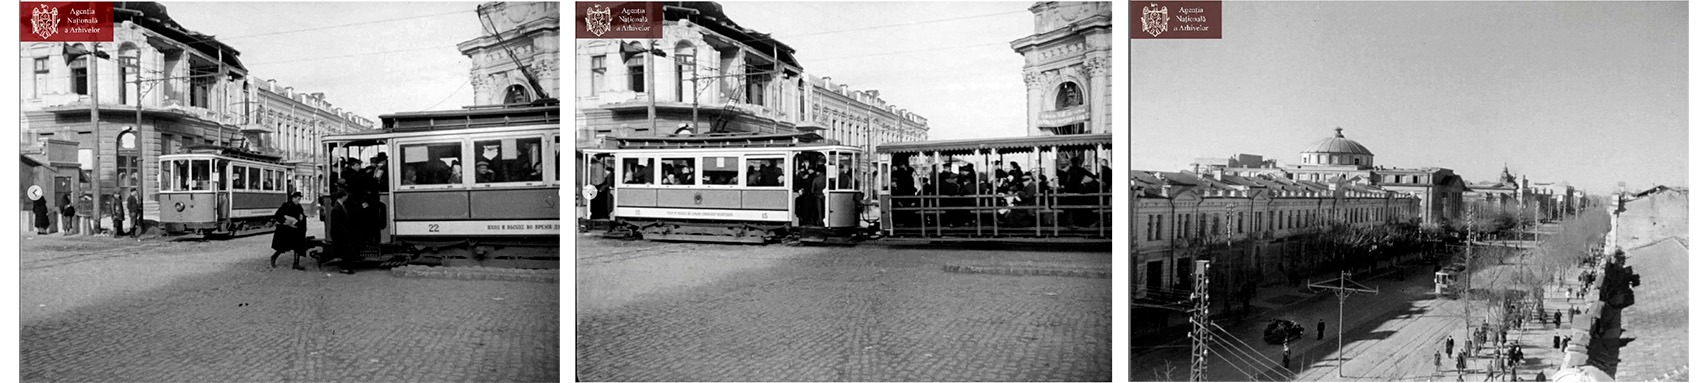 Трамваи Кишинева. Фотографии, сделанные более 100 лет назад